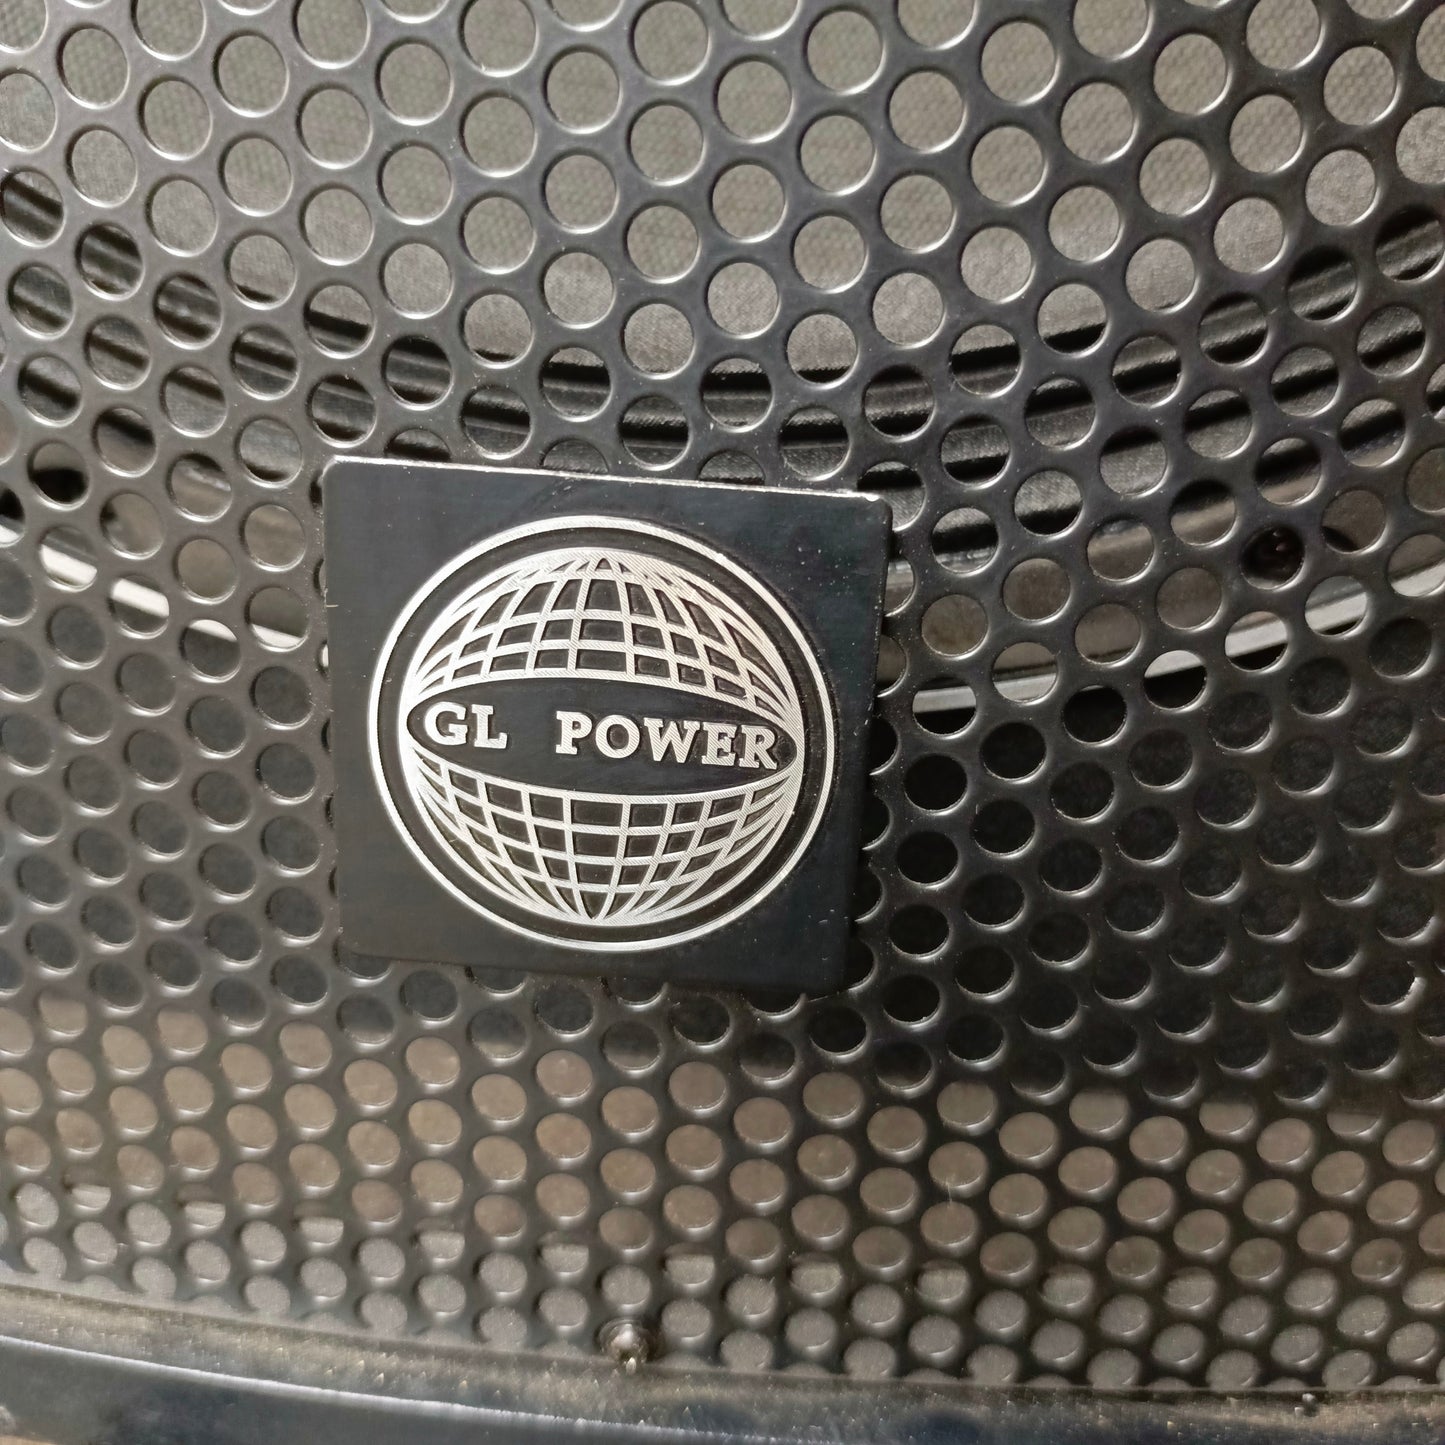 GL POWER GLP-400 15 inch Ice Loudspeaker - Brand New